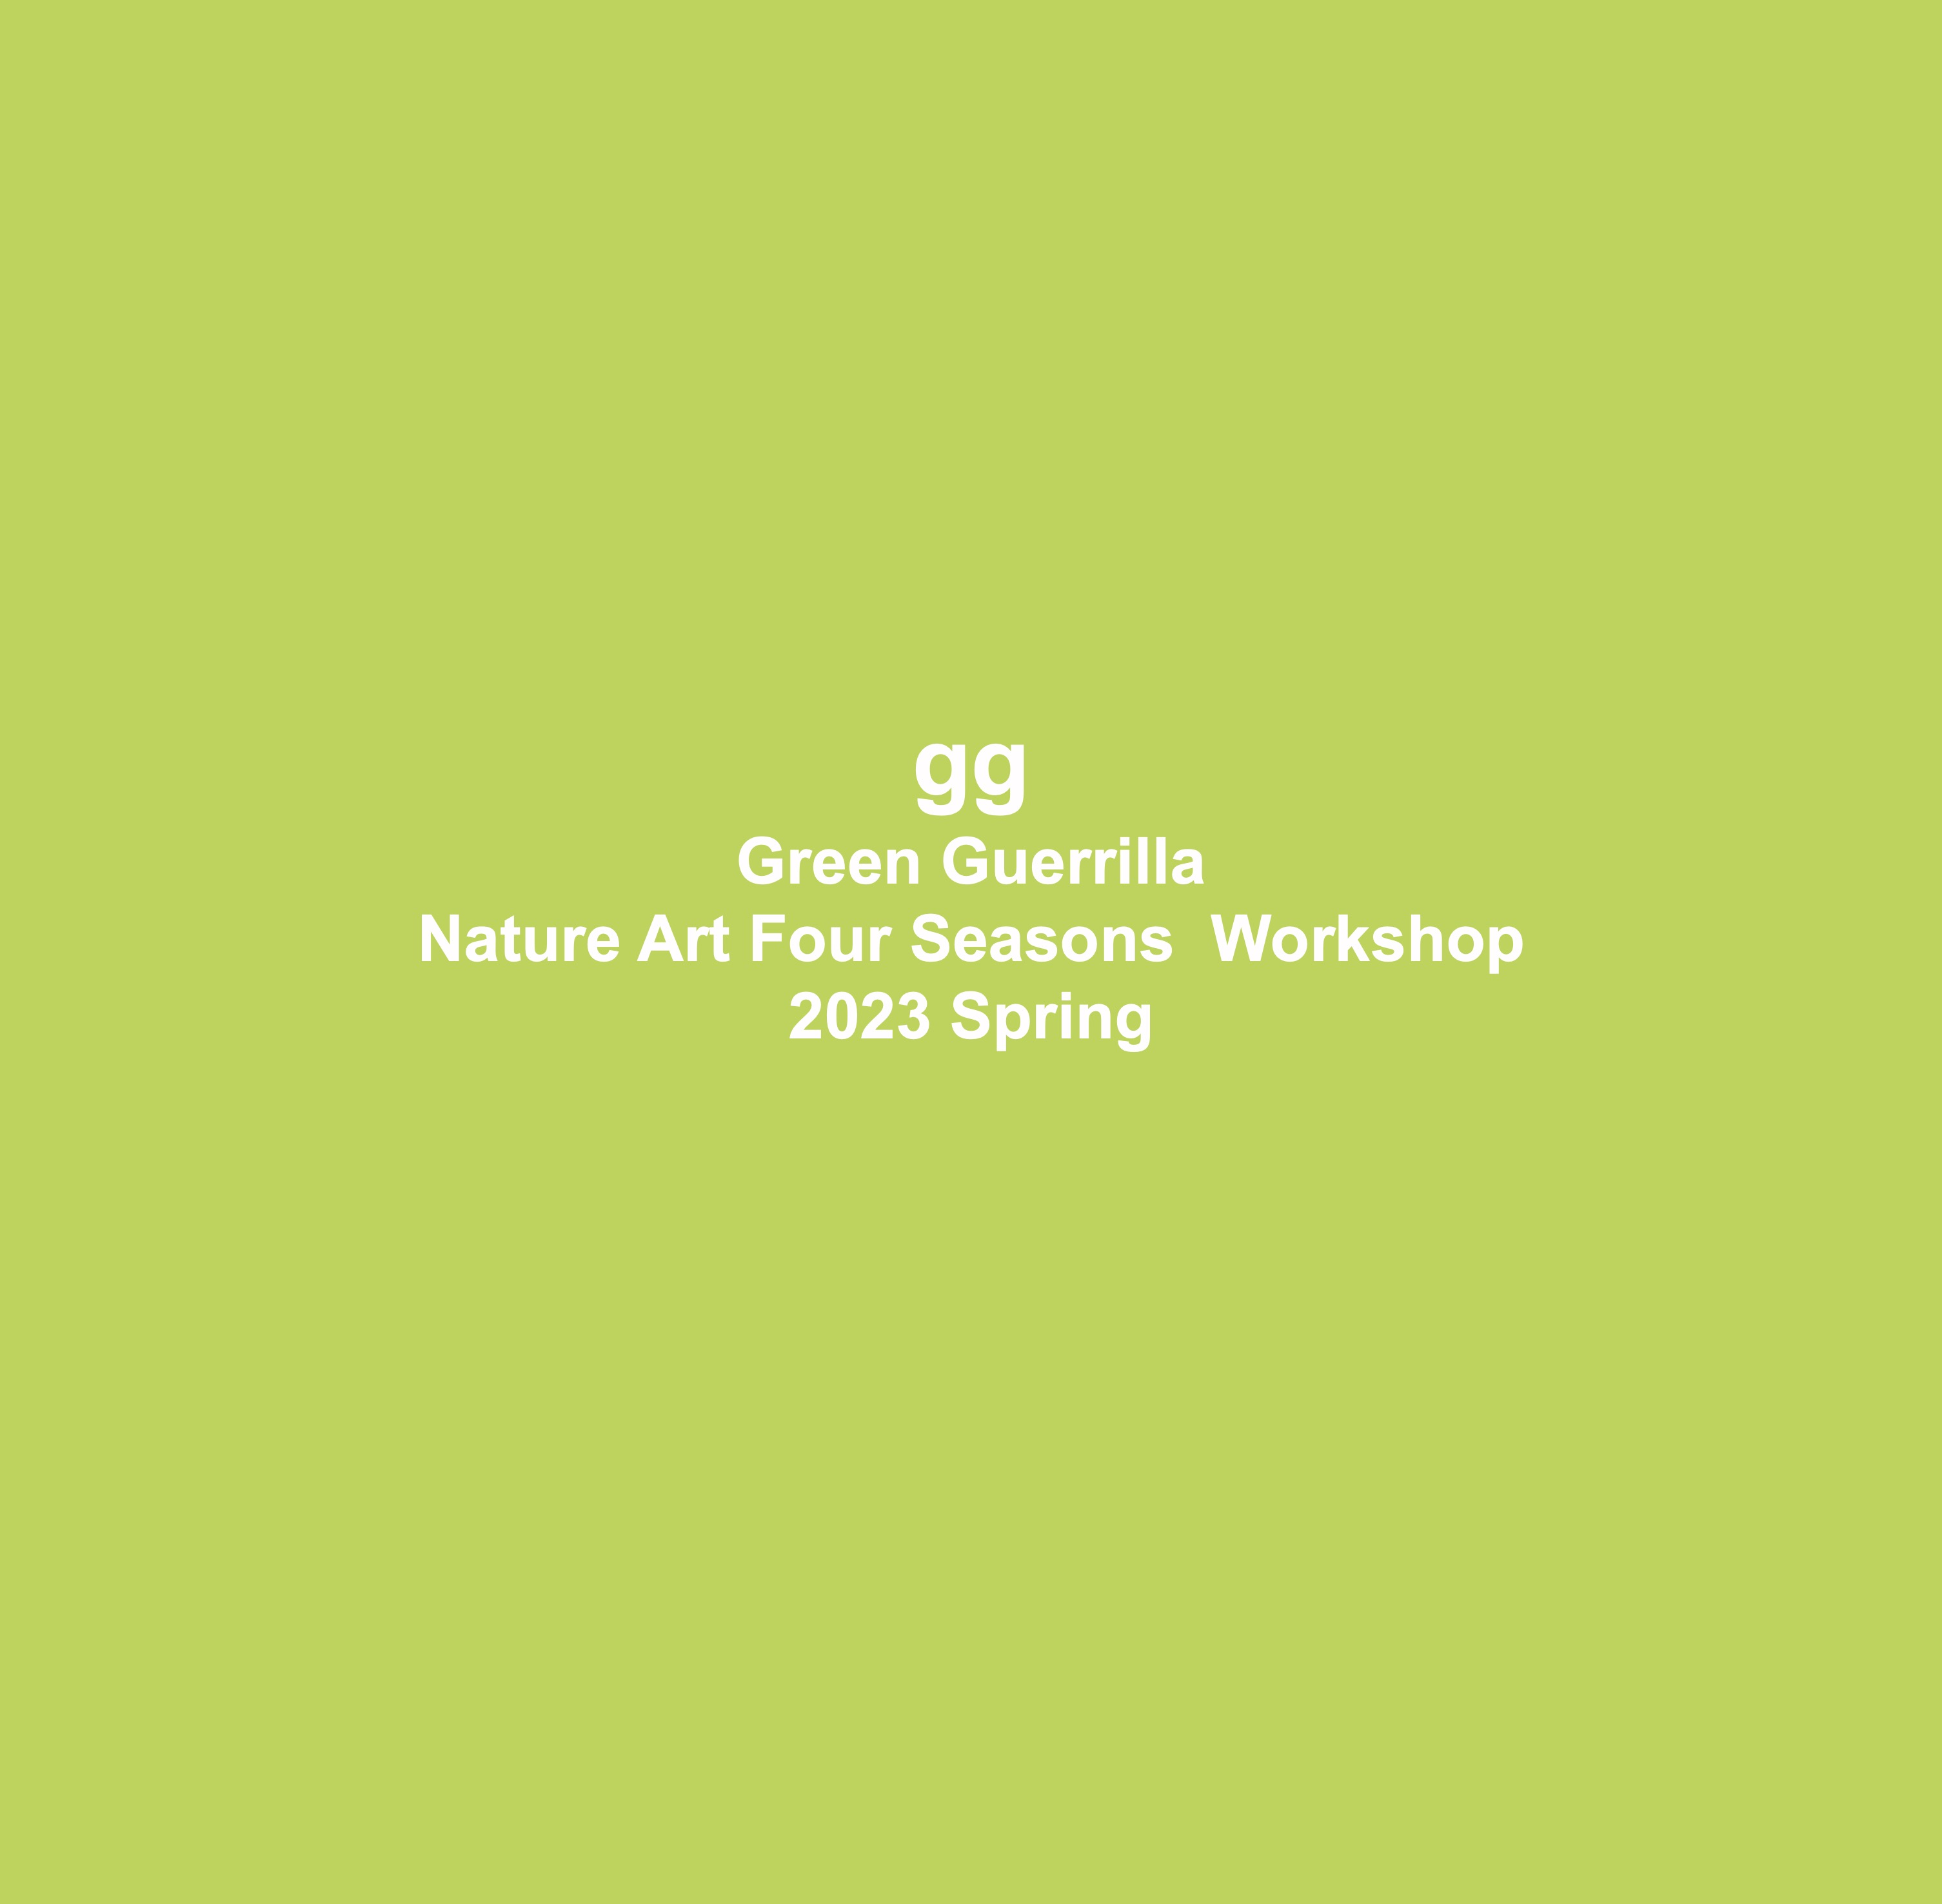 녹색게릴라 자연-미술 워크숍 - 2023 봄 009.jpg